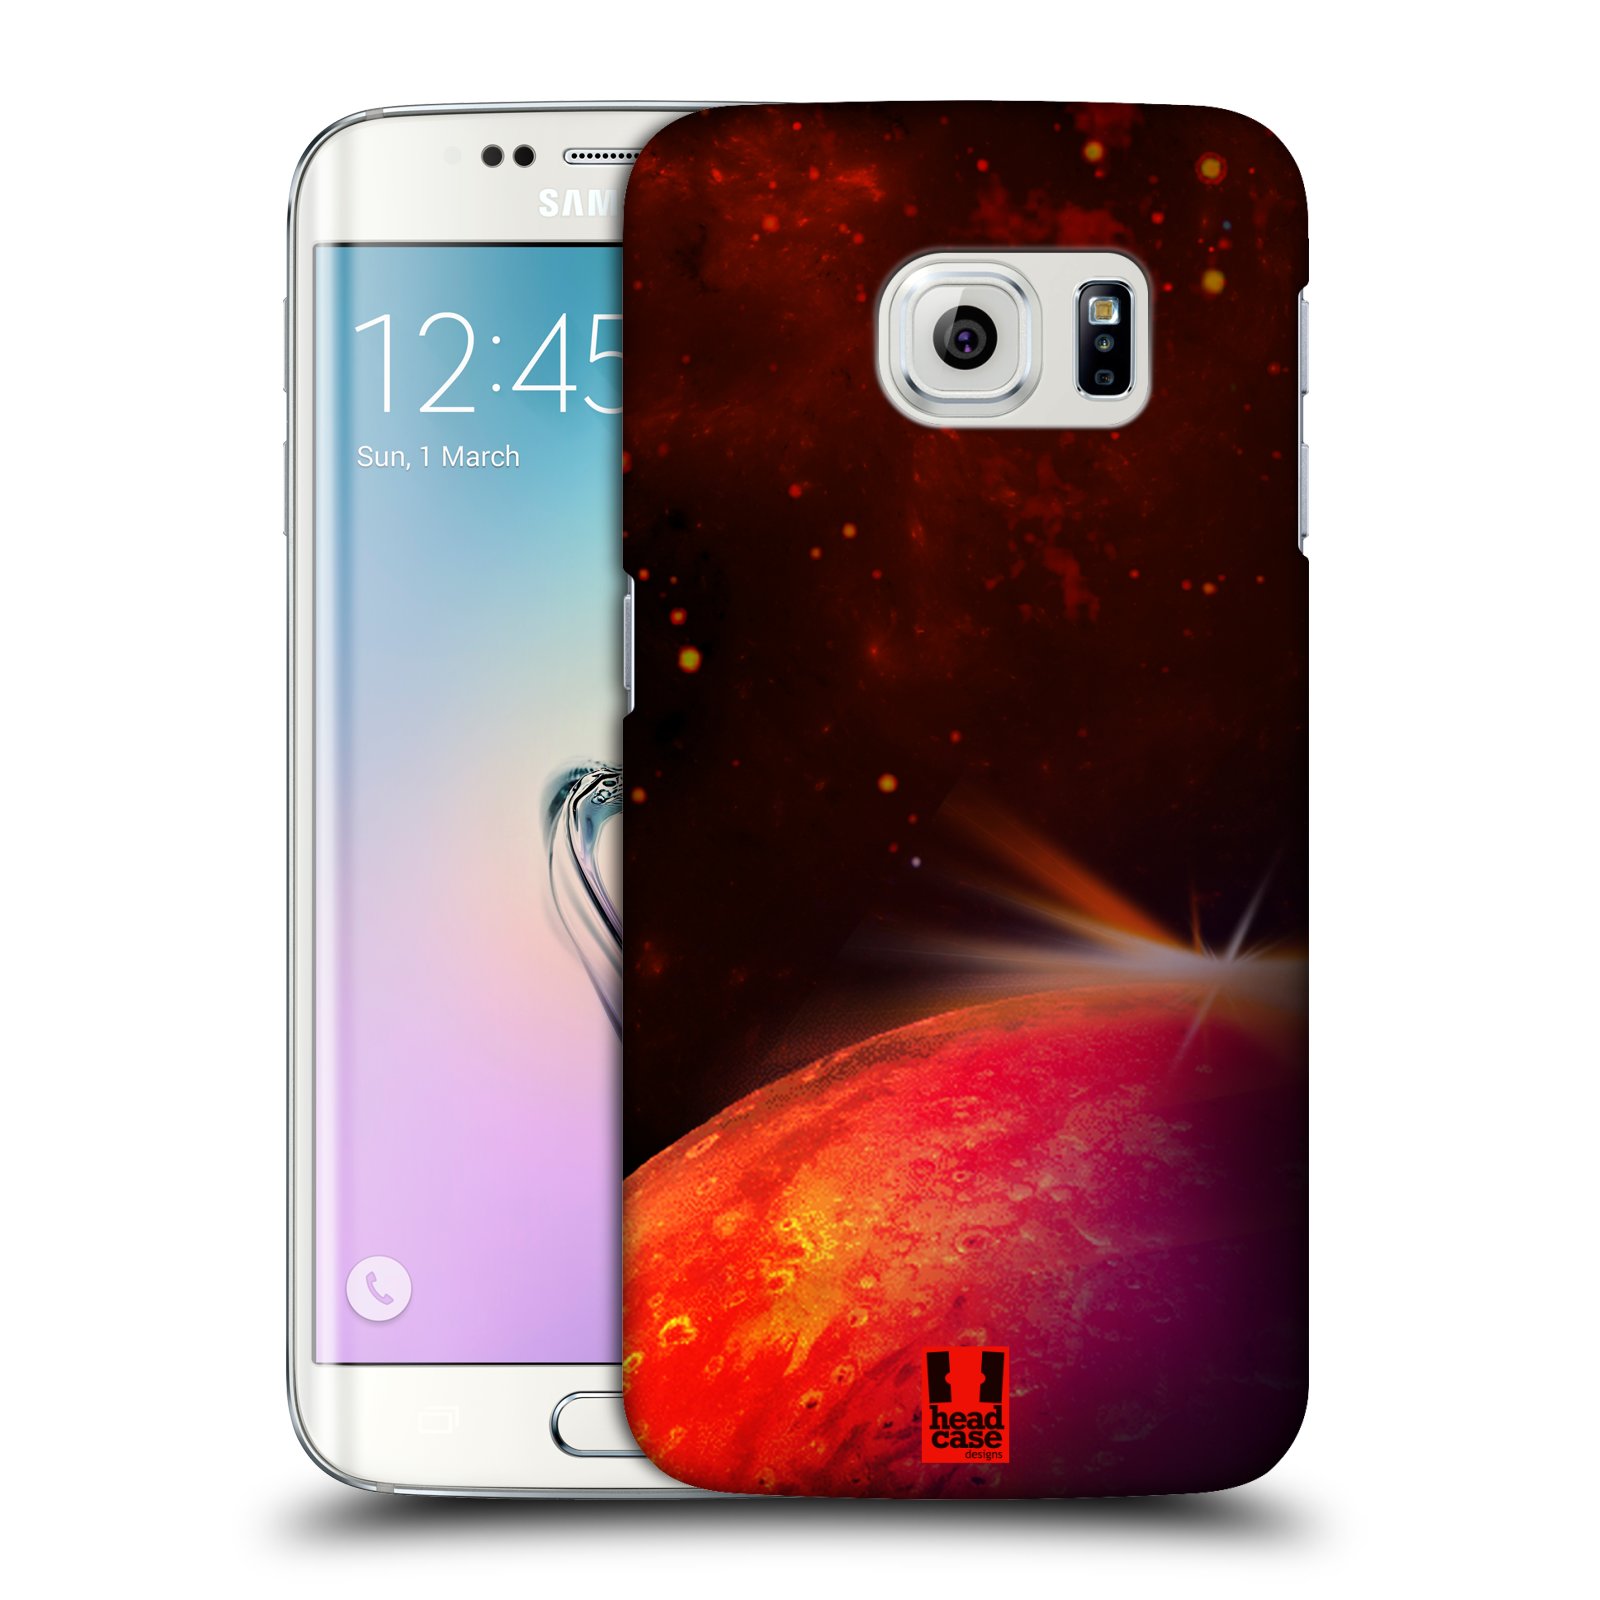 Zadní obal pro mobil Samsung Galaxy S6 EDGE - HEAD CASE - Vesmírné planery Mars